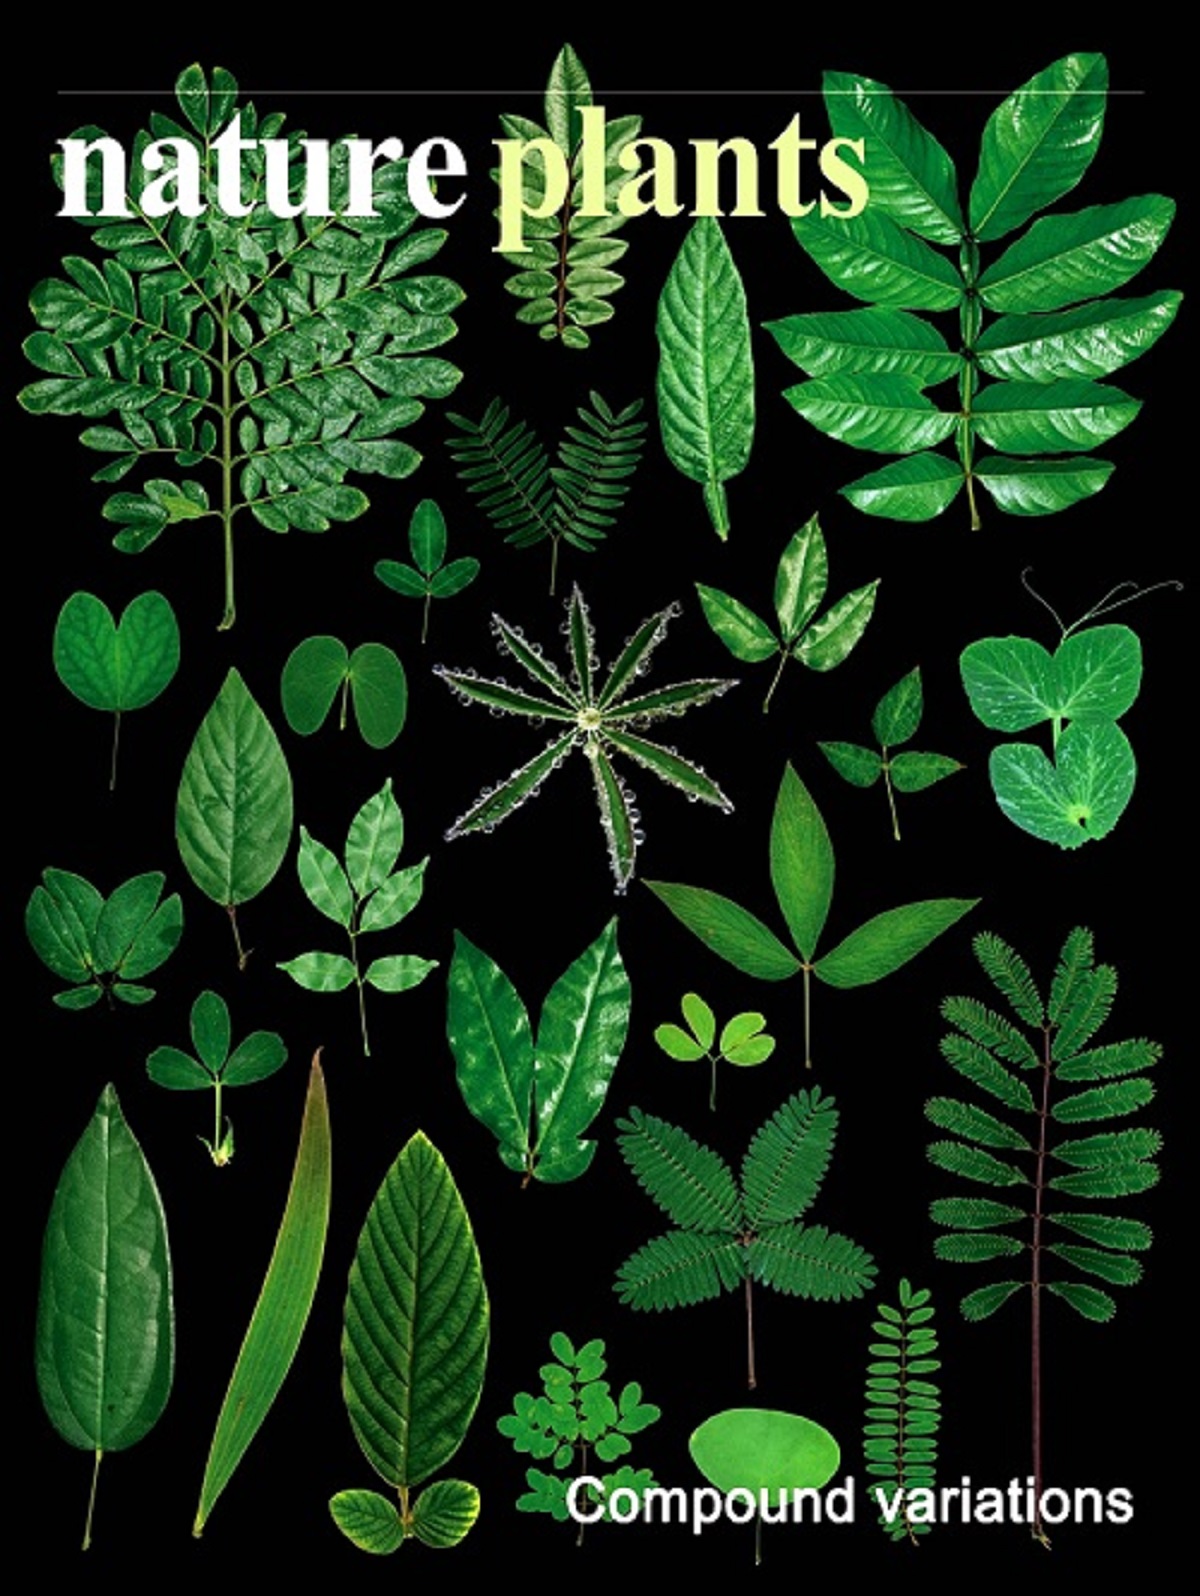 研究成果被选为《自然—植物》封面故事。     陈江华供图